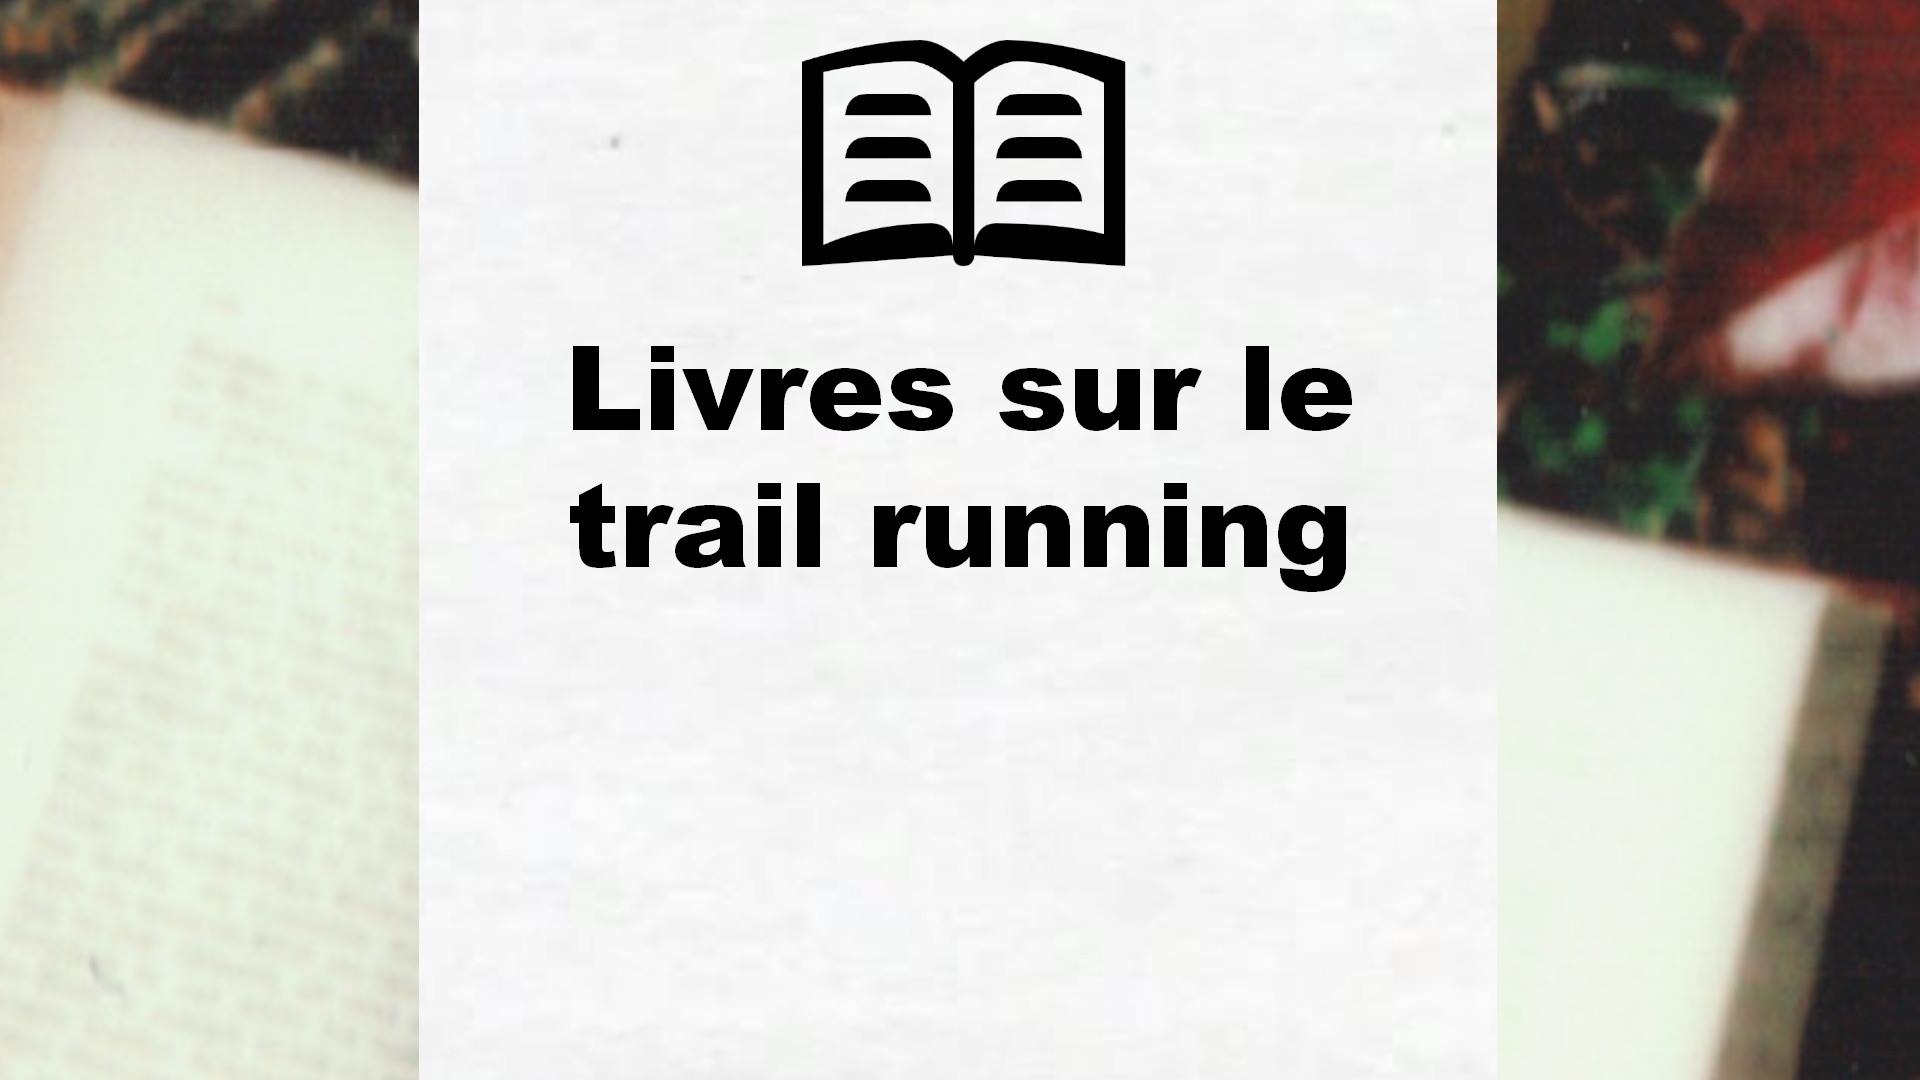 Livres sur le trail running